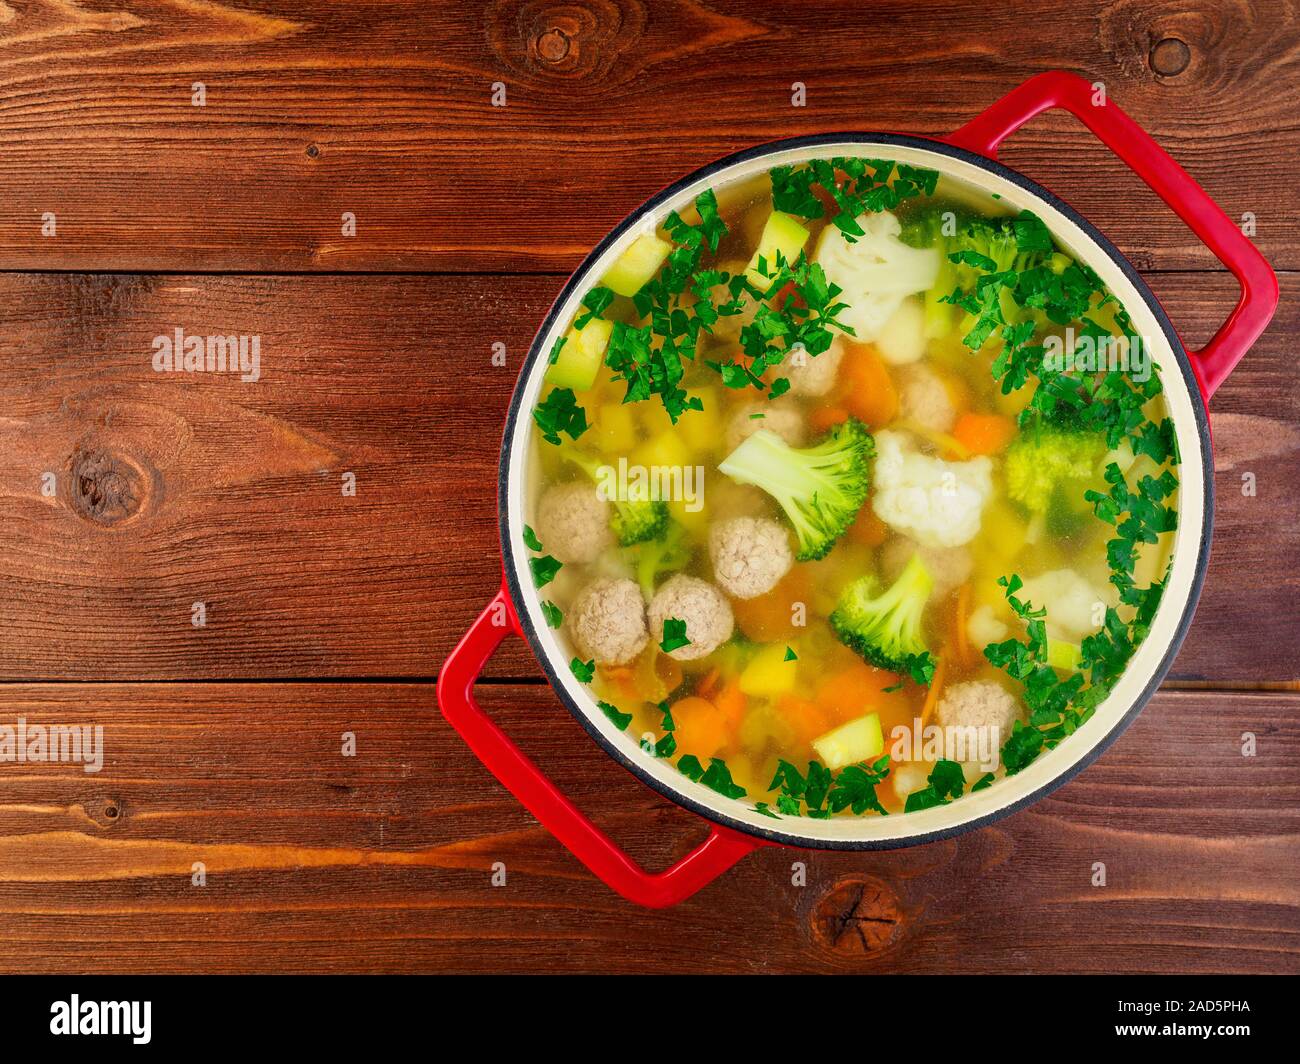 Große Metal cast rot Pan mit köstlichen heißen Suppe mit Gemüse und Frikadellen, Blumenkohl, Brokkoli, Möhren, Paprika, Kartoffeln, gesunde Diät essen. Br Stockfoto